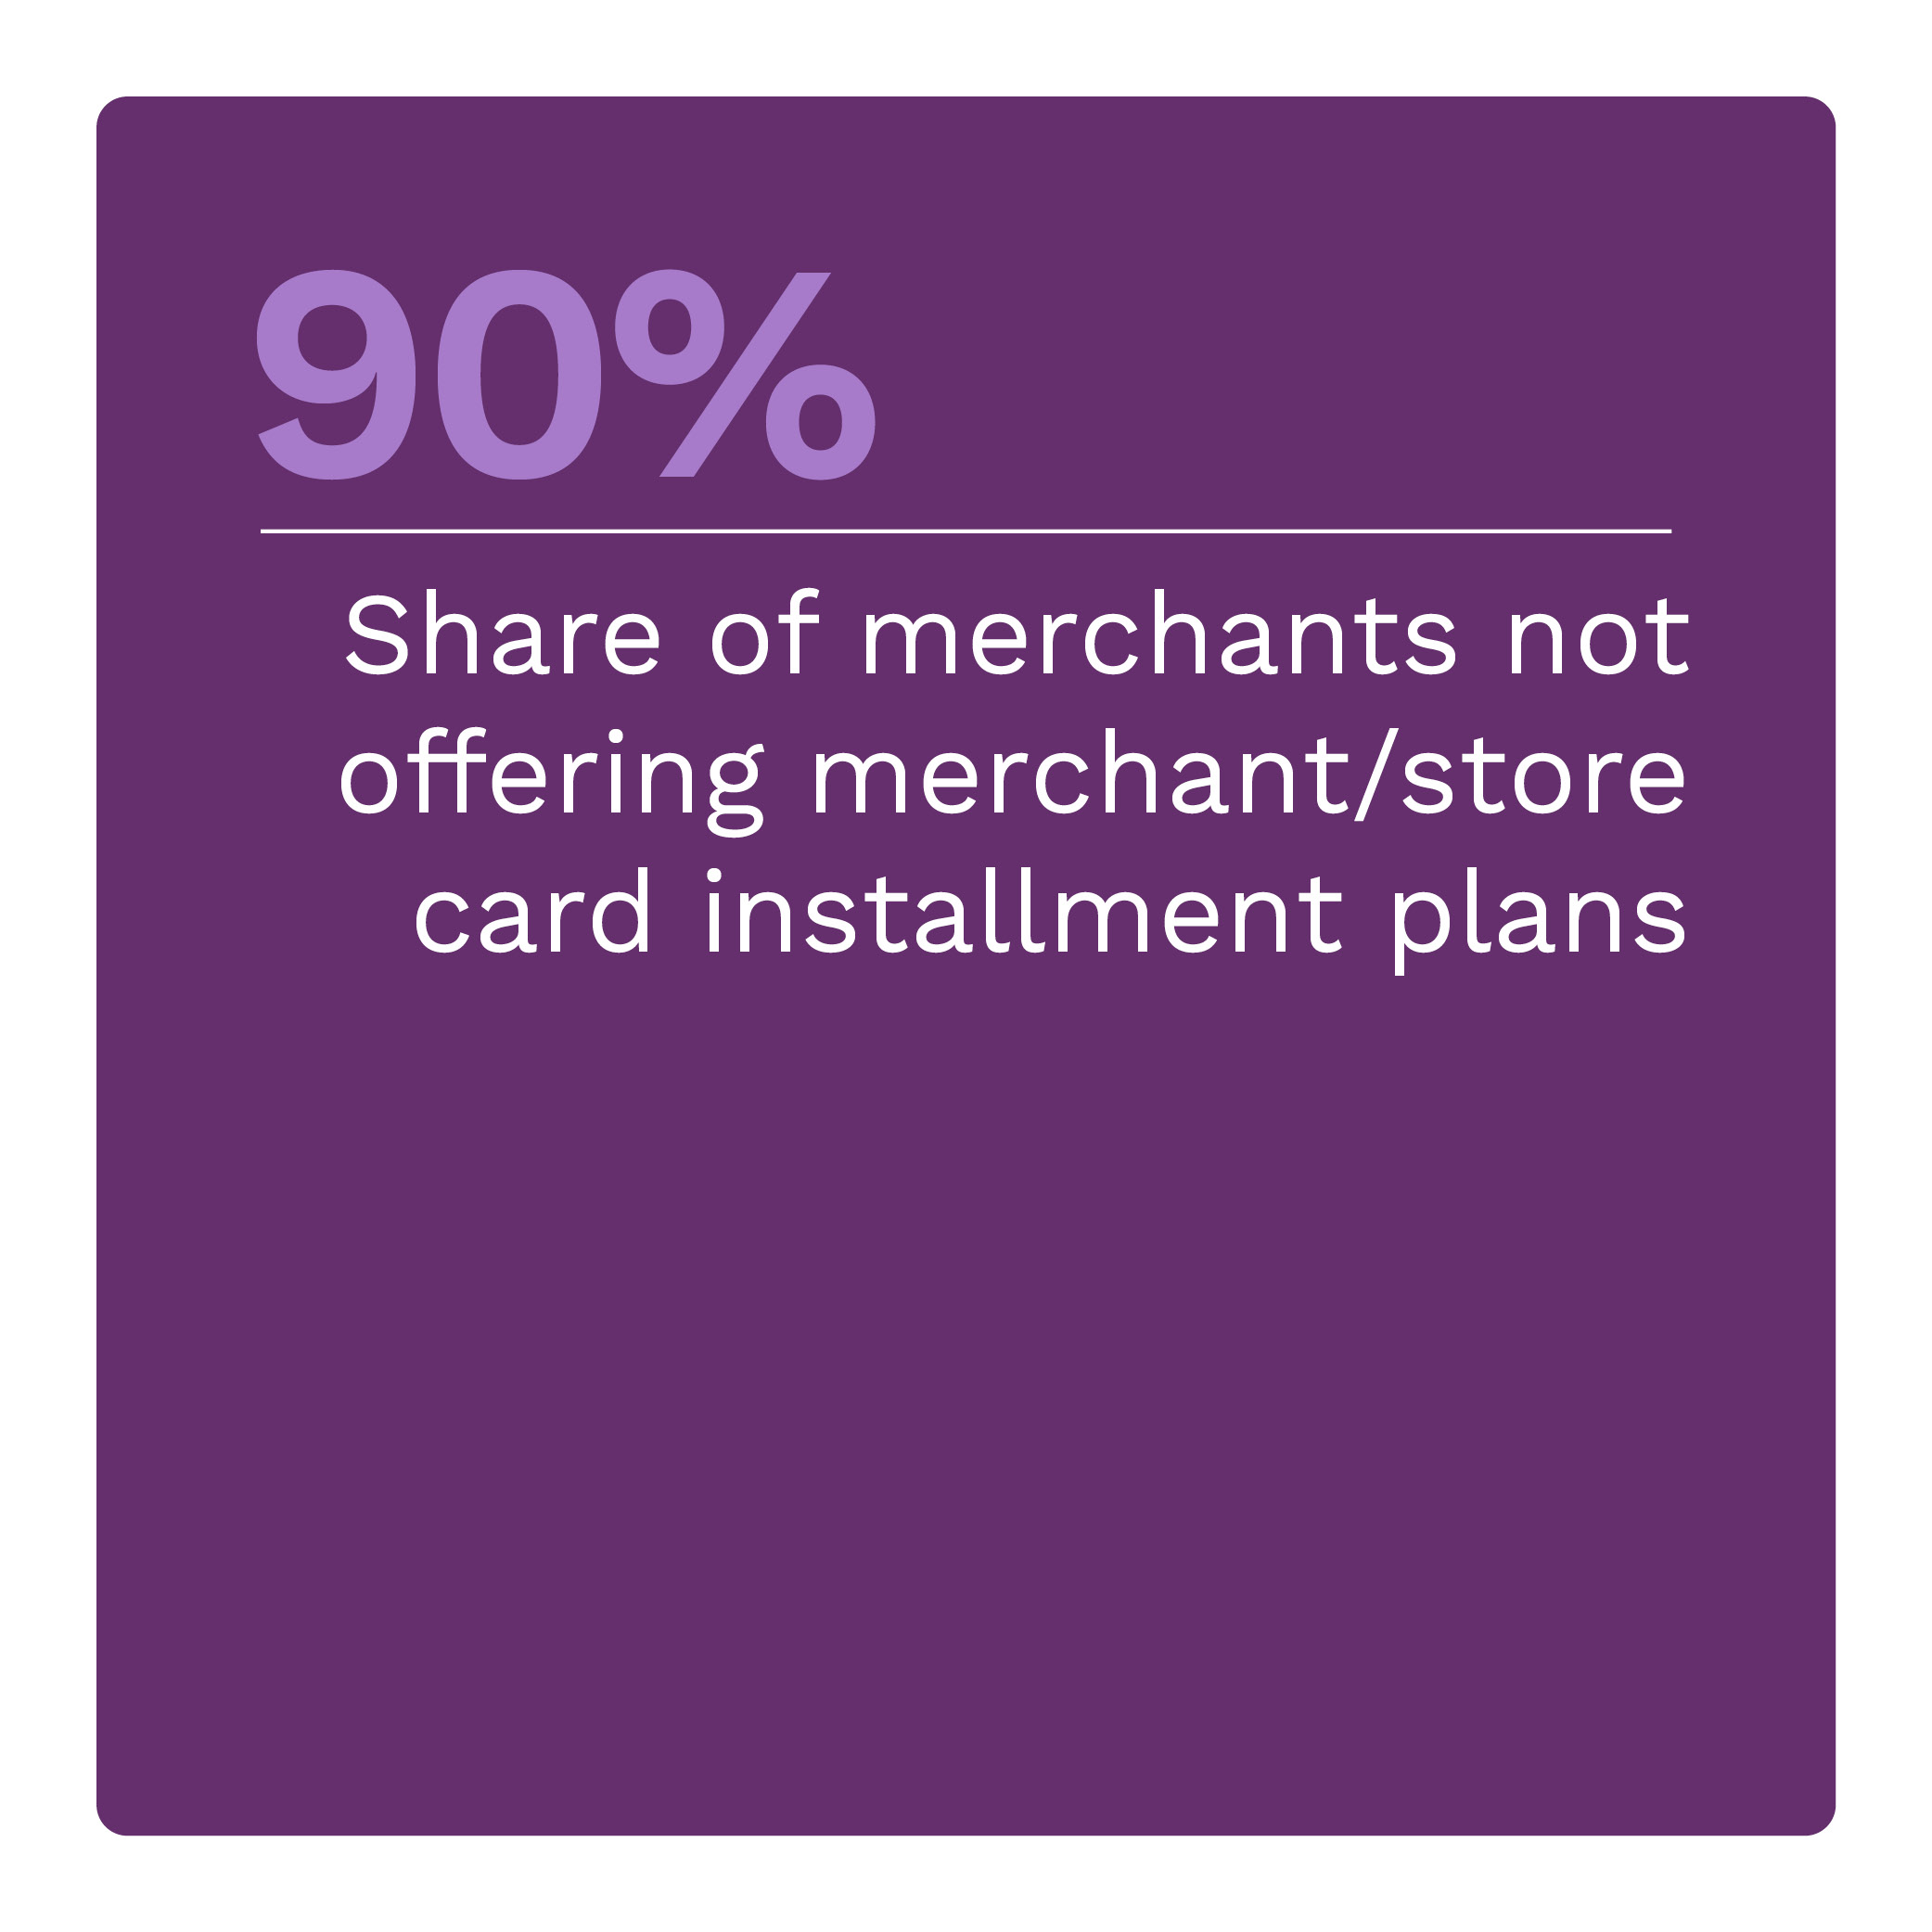 90%: Share of merchants not offering merchant/store card installment plans